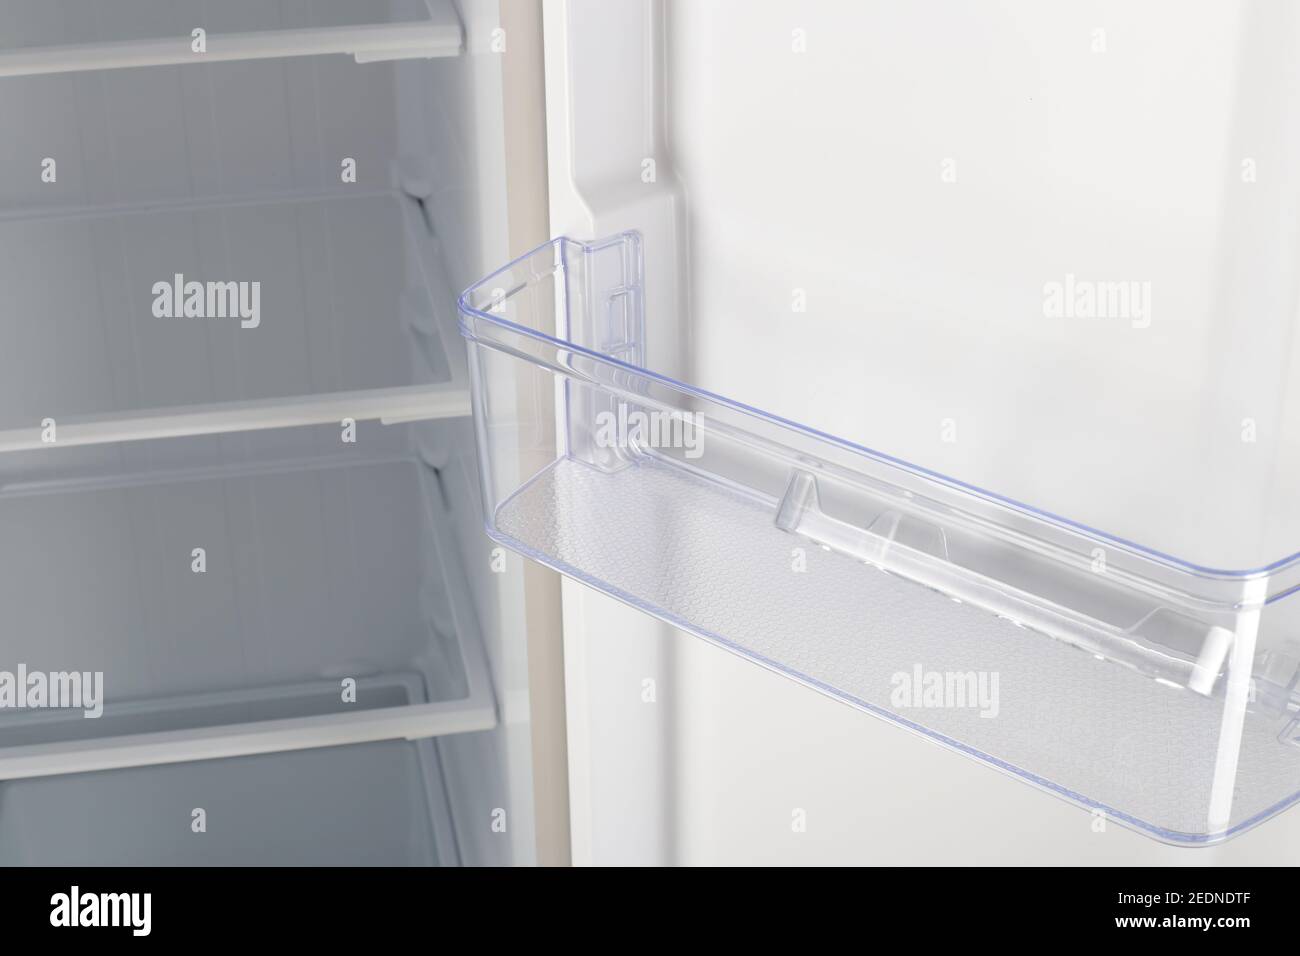 Appareil domestique - réfrigérateur blanc à deux portes à fermeture intérieure Banque D'Images